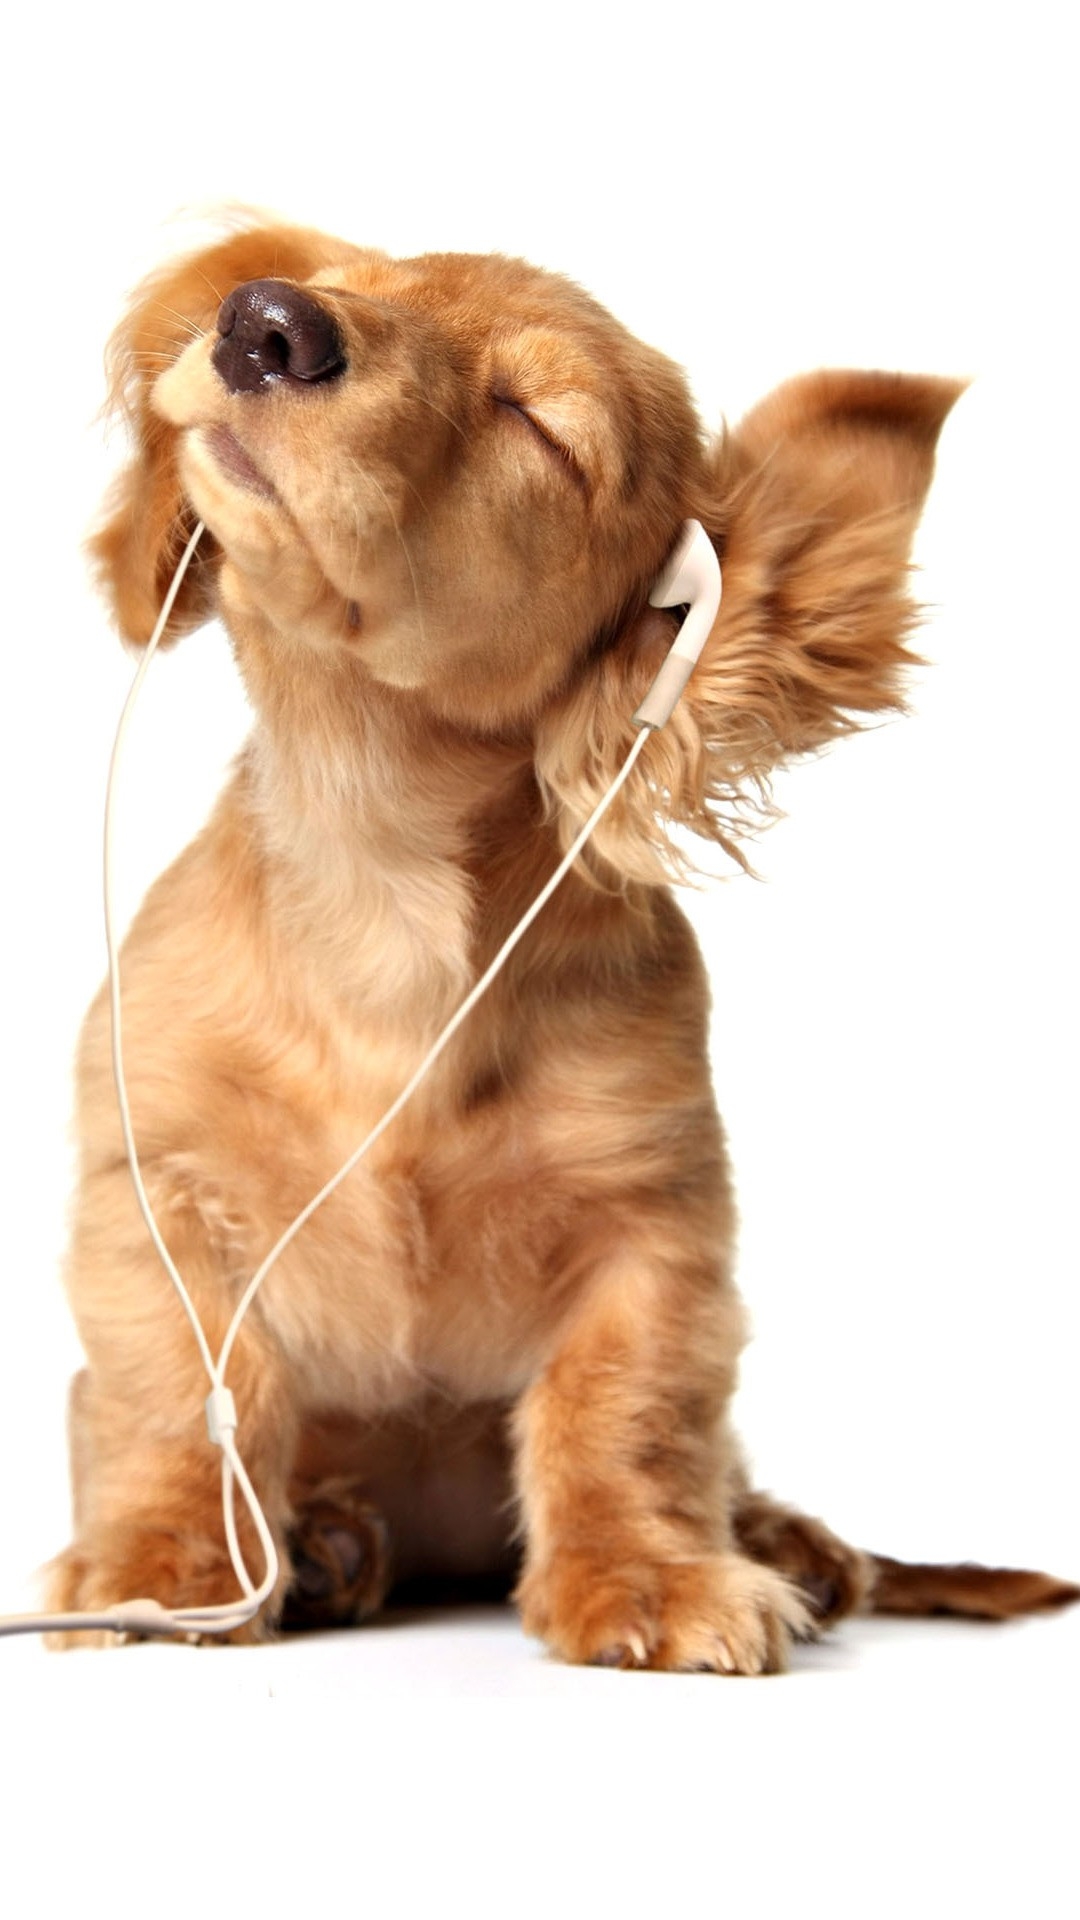 音楽を聞く犬 Iphone12 スマホ壁紙 待受画像ギャラリー